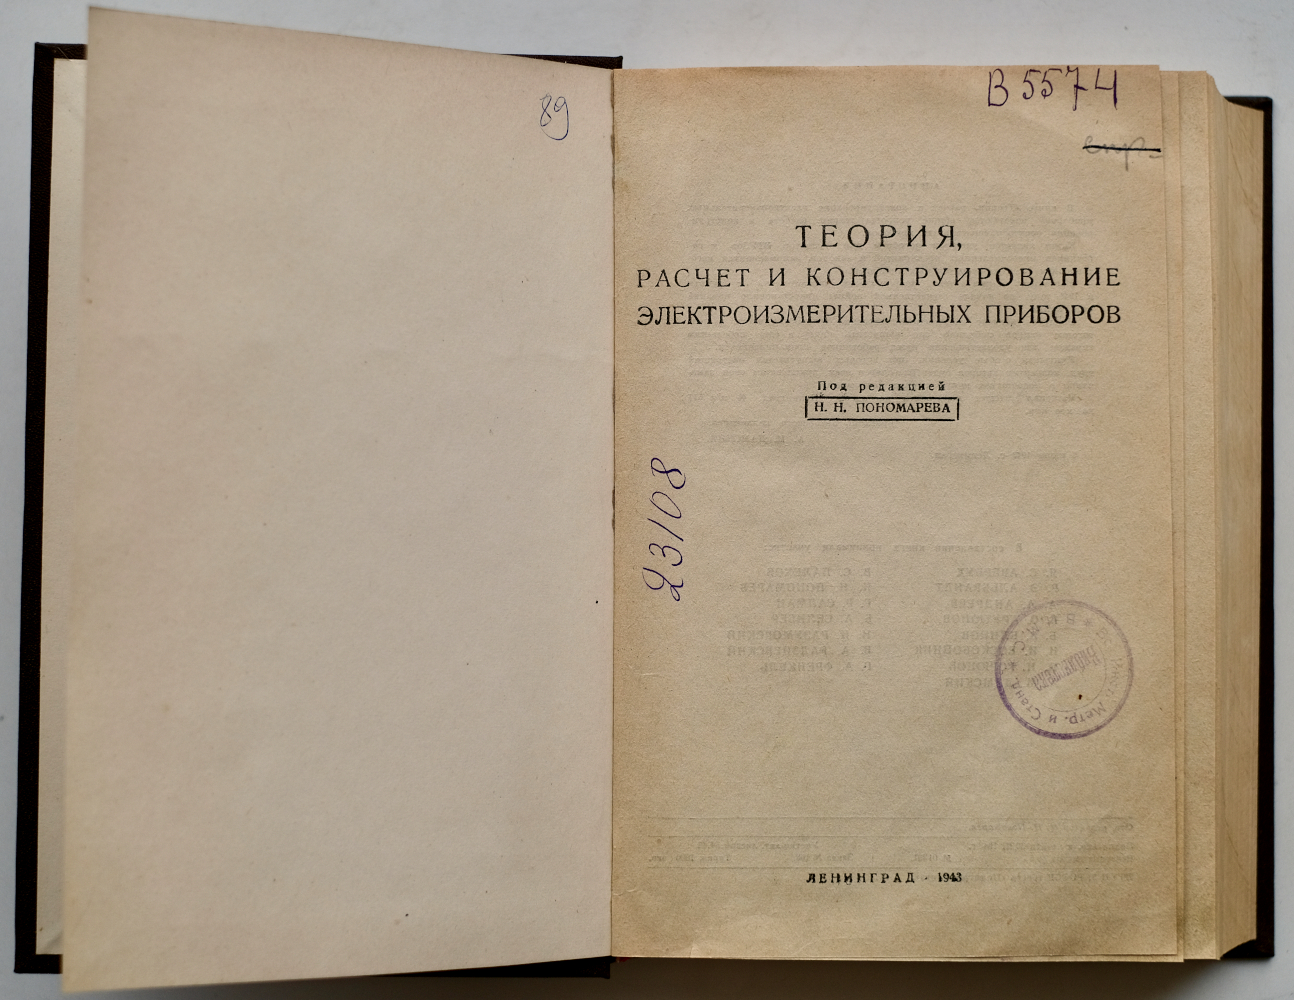 Титульный лист монографии Н. Н. Пономарева «Теория, расчет и конструирование электроизмерительных приборов»